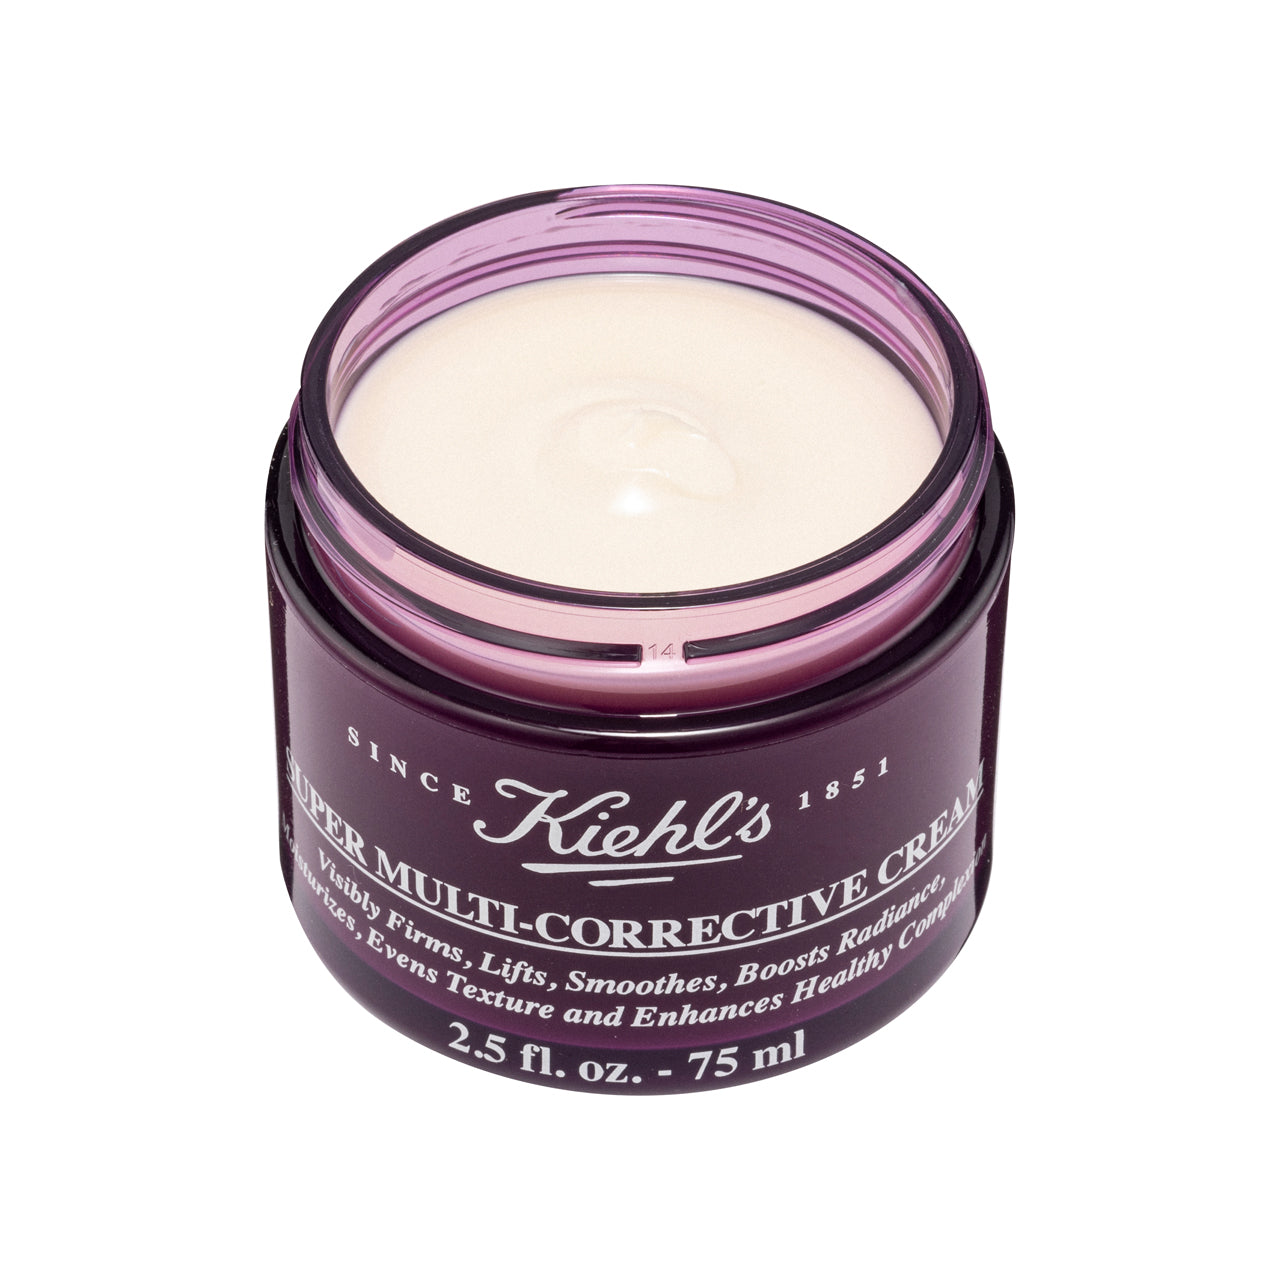 Kiehl's Super Multi-Corrective Cream 75ML | Sasa Global eShop